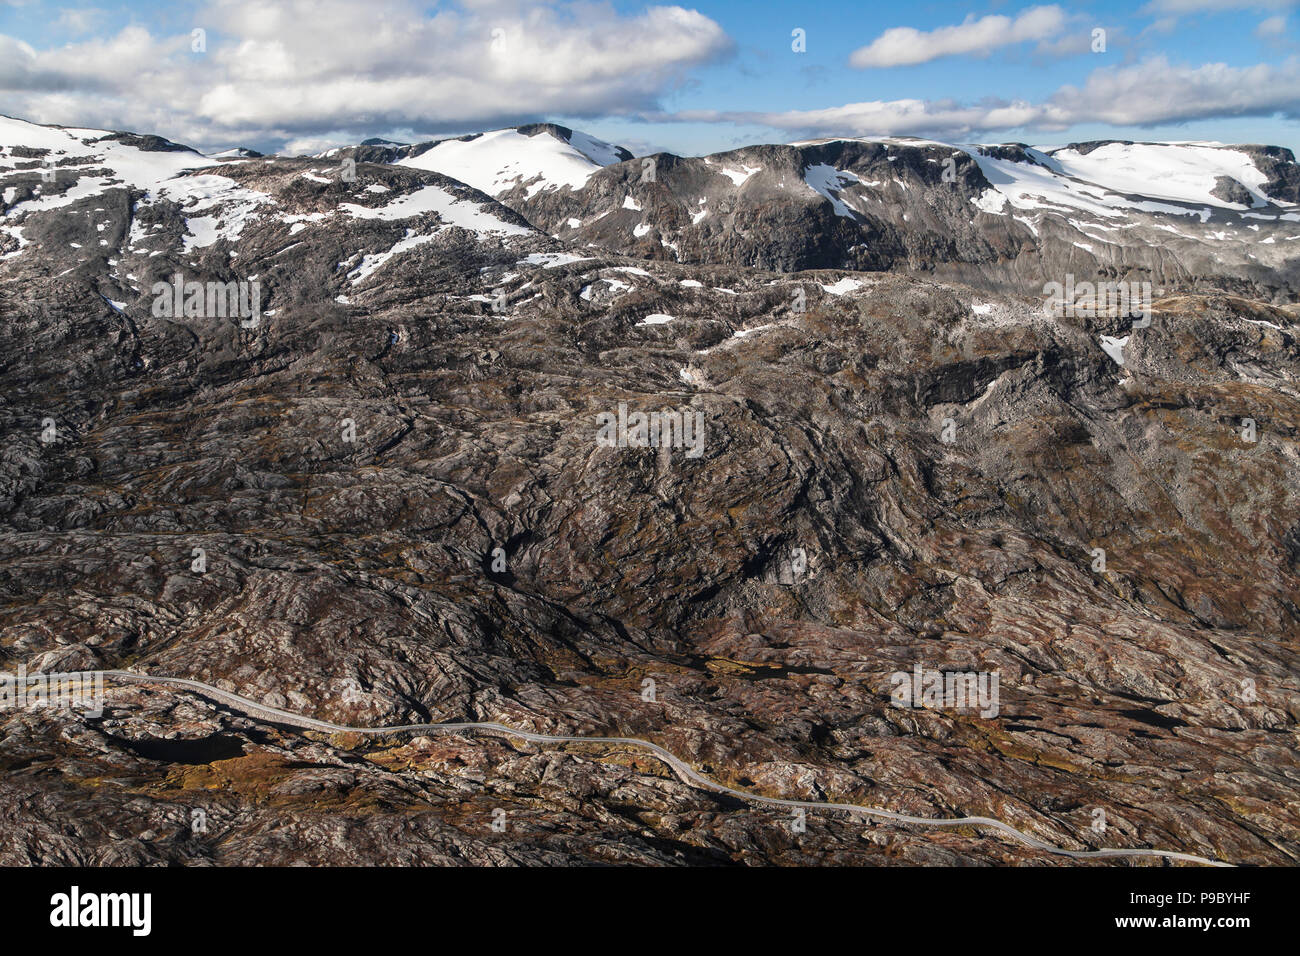 La route touristique nationale de Geiranger à travers la vallée de Flydal vu depuis le plateau de montagne Dalsnibba, Geiranger, Norvège. Banque D'Images